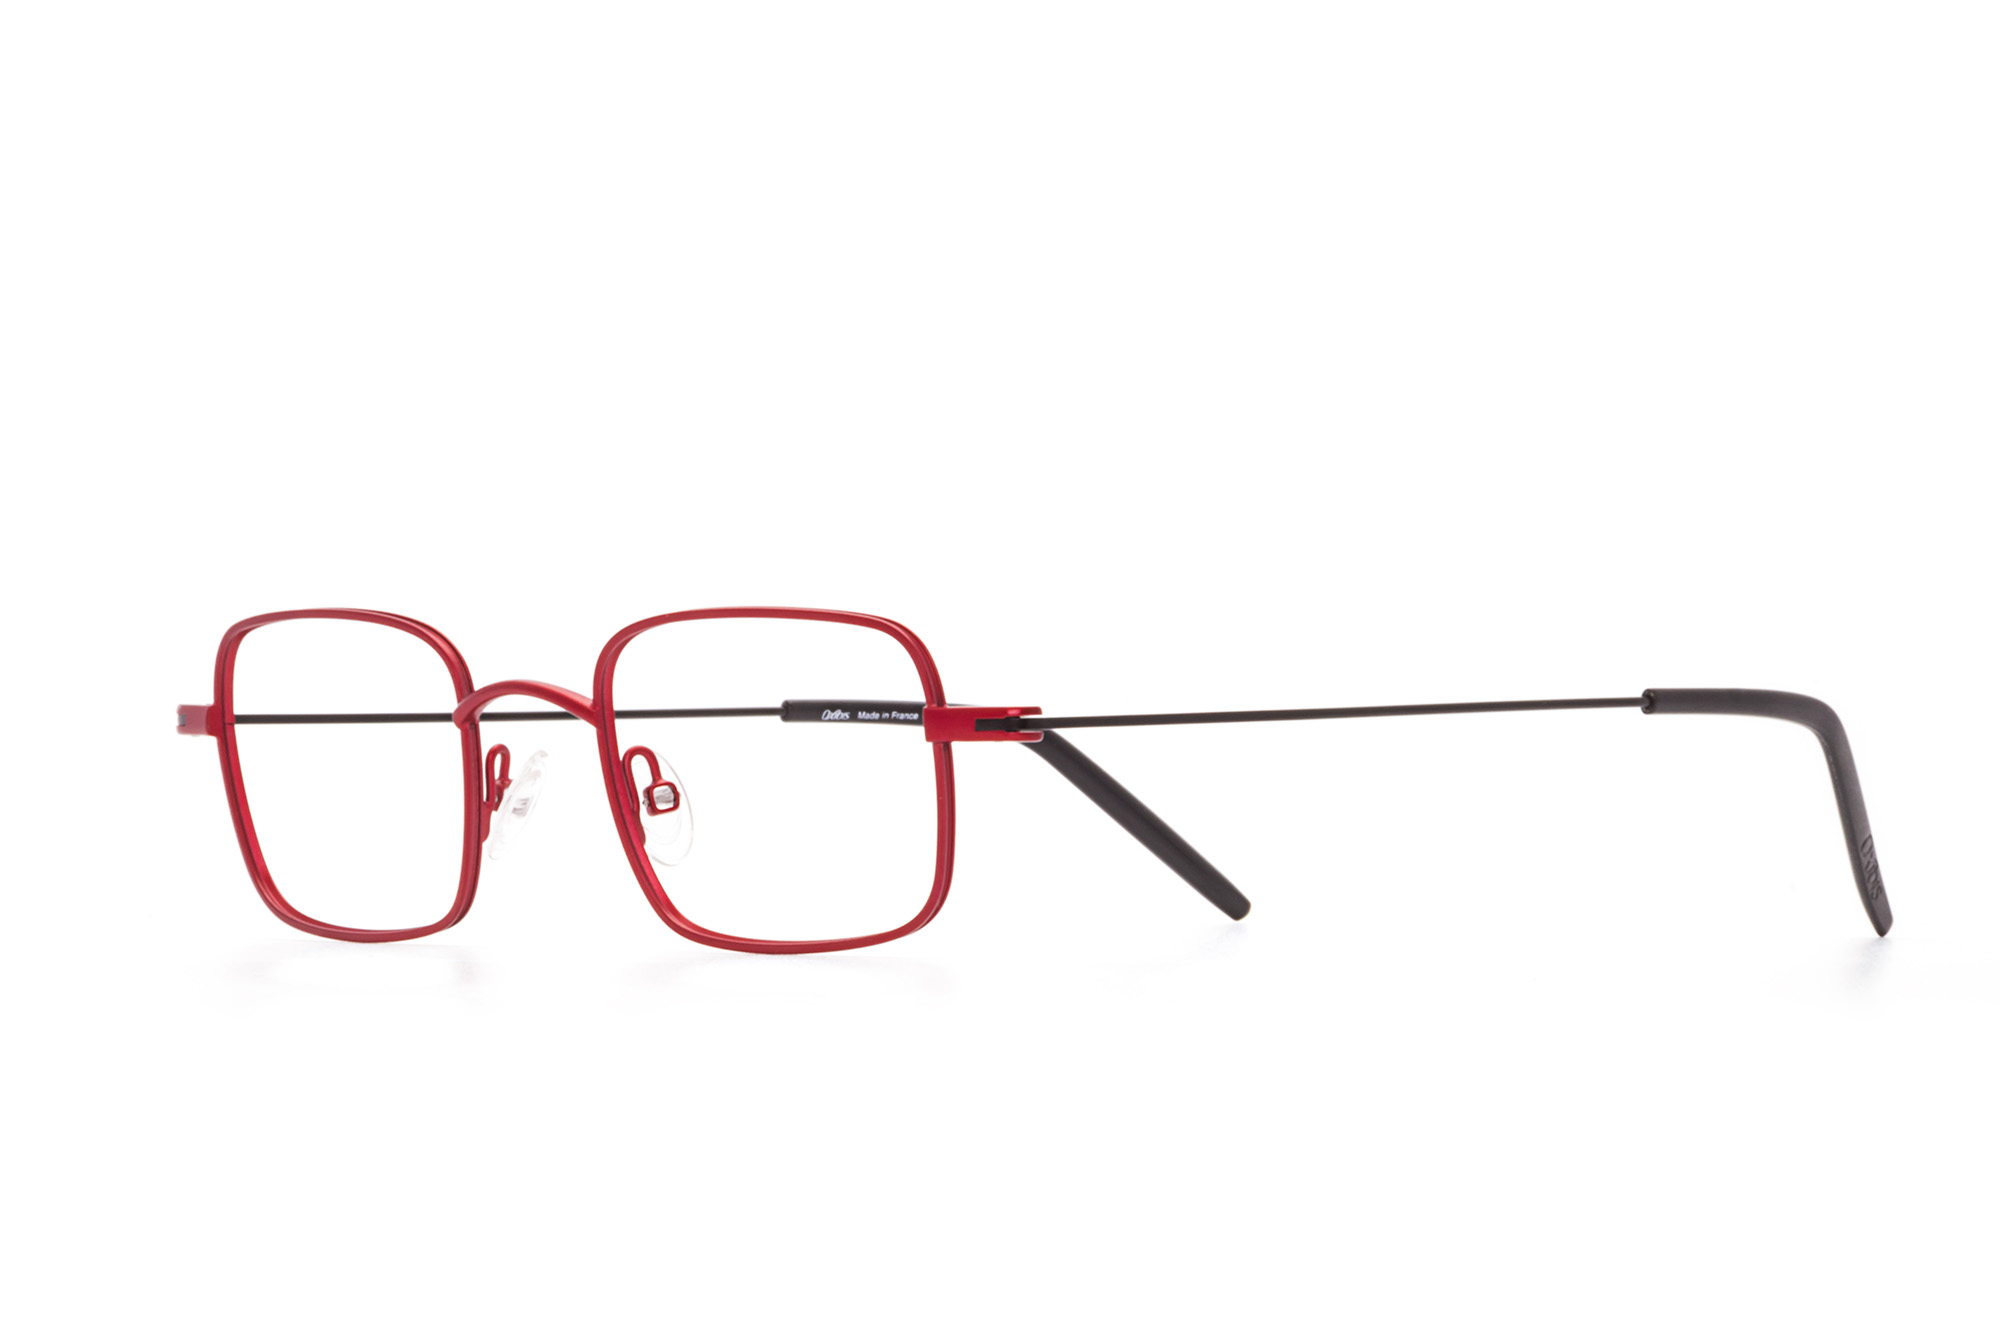 Kullanıma hazır optik tarzda işlenmiş camları ve optik uyumlu çerçevesiyle Oxibis Ippy IP5C5 45 küçük ekartman kırmızı ve siyah renkli dikdörtgen model unisex gözlüğü optisyen veya gözlükçülerin sunacağı numarasız veya numaralı cam özelleştirmeleriyle size en yakın gözlükçüden satın alabilirsiniz.